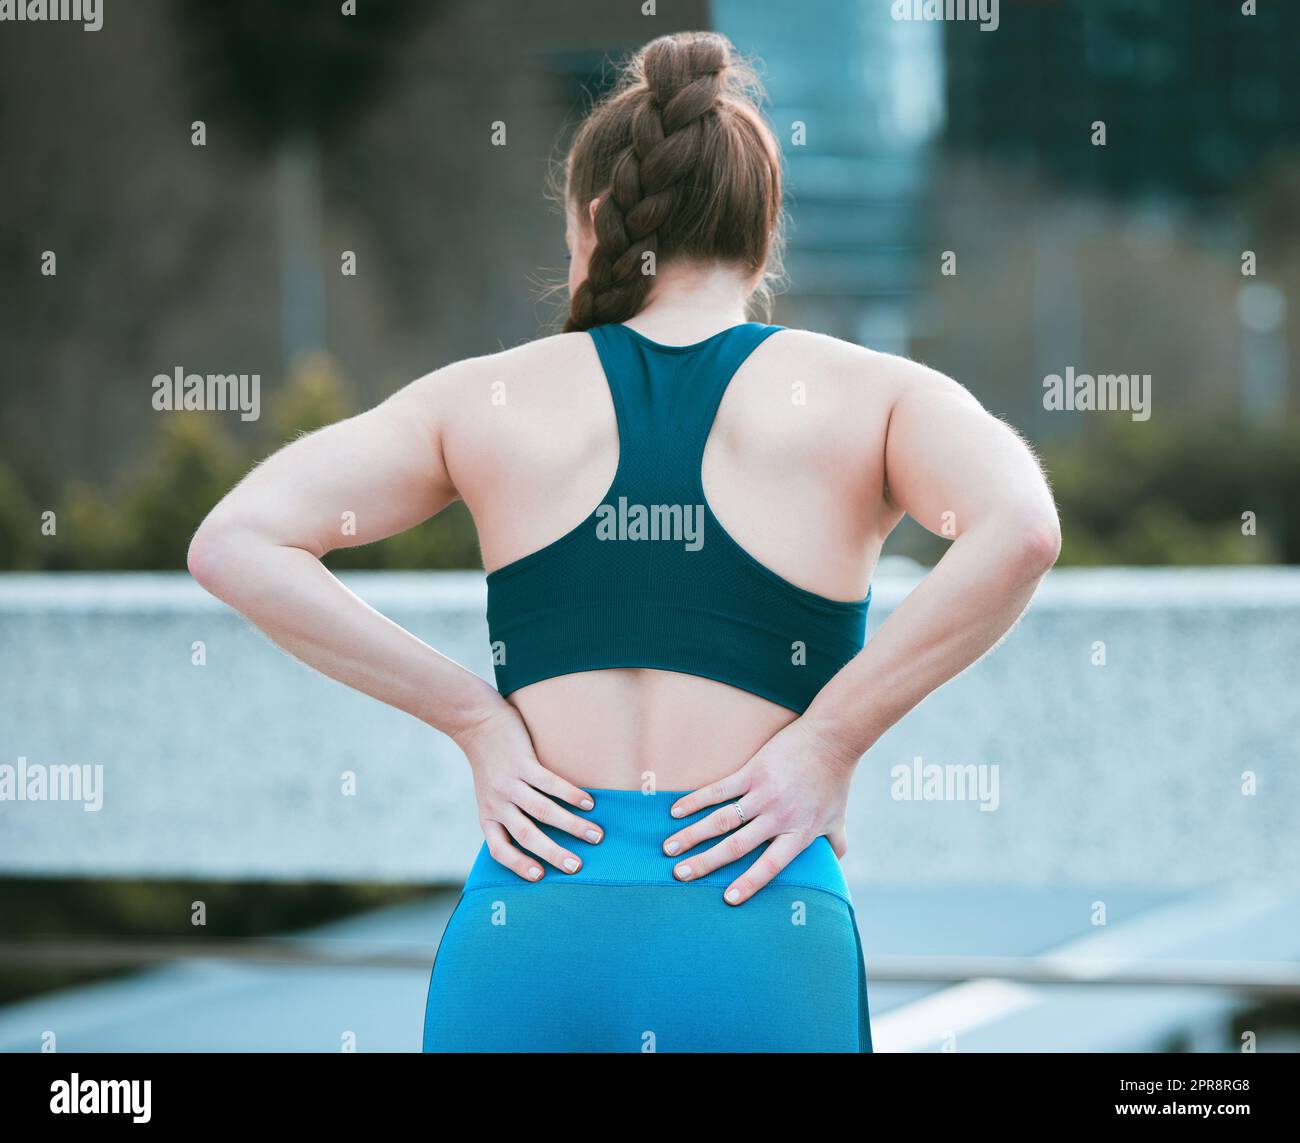 Eine weiße Frau von hinten hält Wunde Rückenpartie, während sie draußen trainiert. Sportlerin mit schmerzhafter Wirbelsäulenverletzung durch Gelenkfraktur und Muskelentzündung während des Trainings. Schwierigkeiten mit steifen Krämpfen, die Unbehagen und Belastungen verursachen Stockfoto